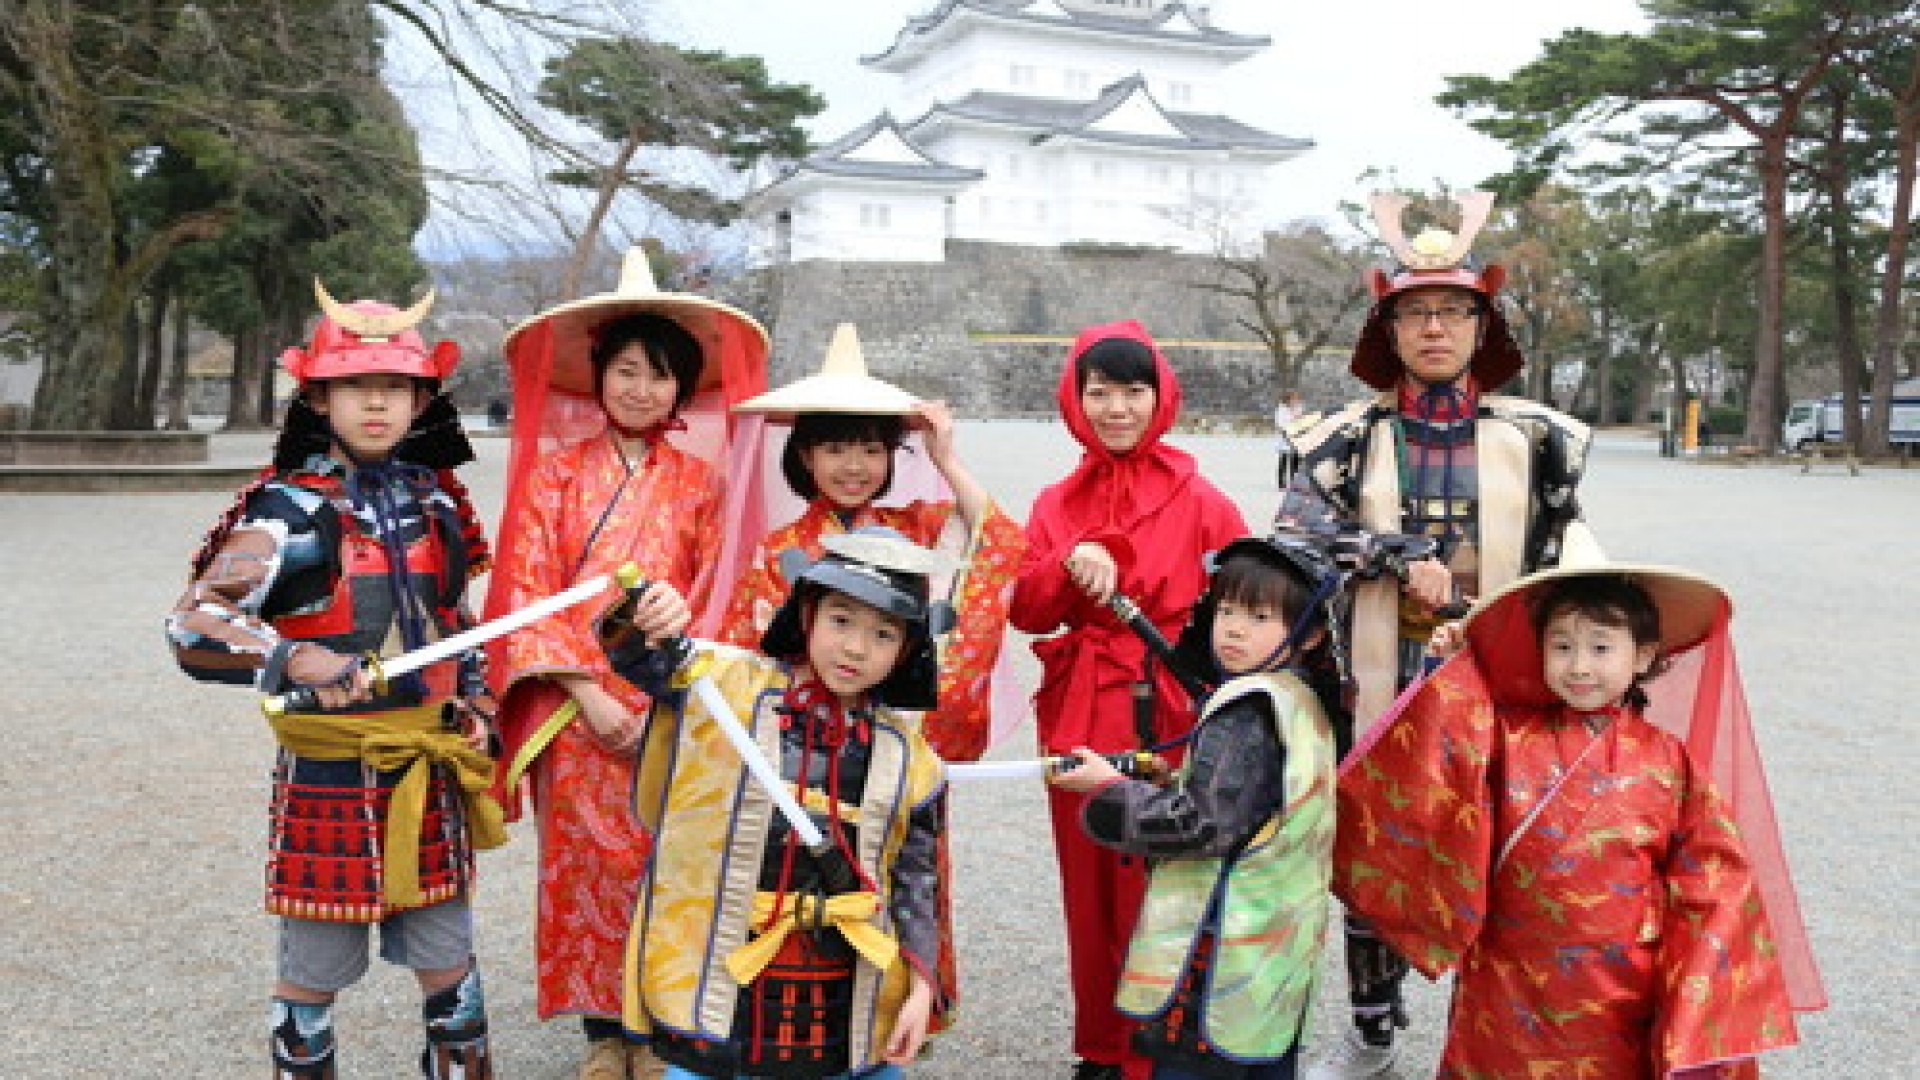 Tokiwamokimon del Castillo de Odawara (experiencia disfrazándose con una armadura)